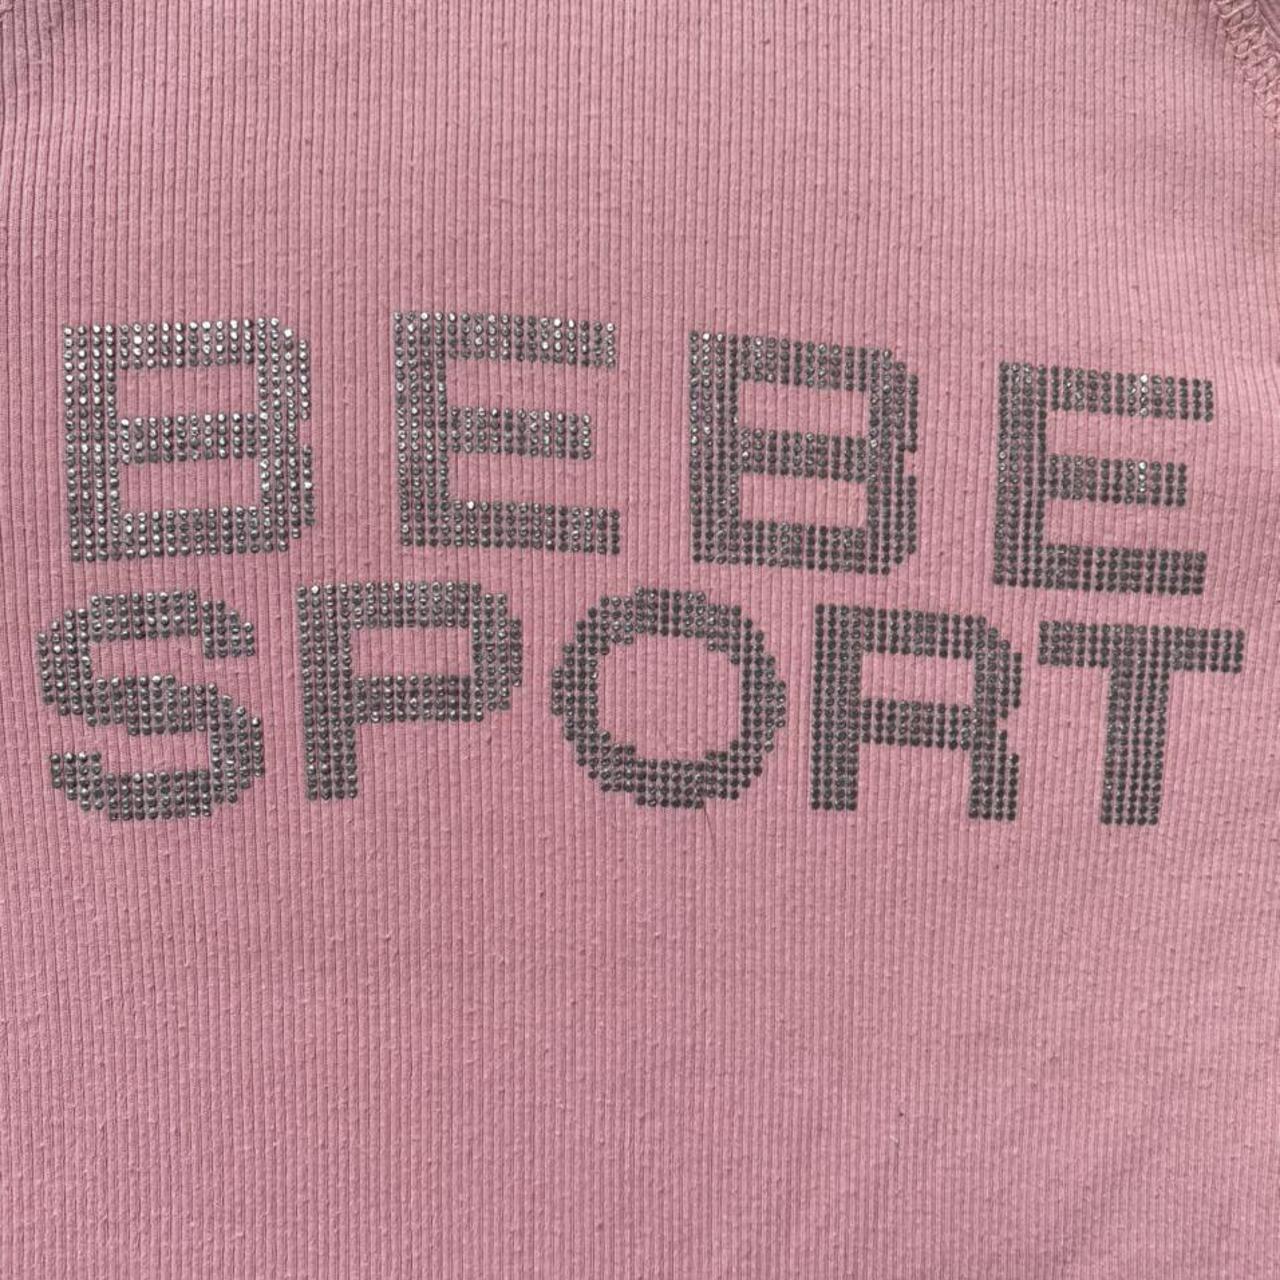 Product Image 3 - Mega cute pink ribbed Bebe